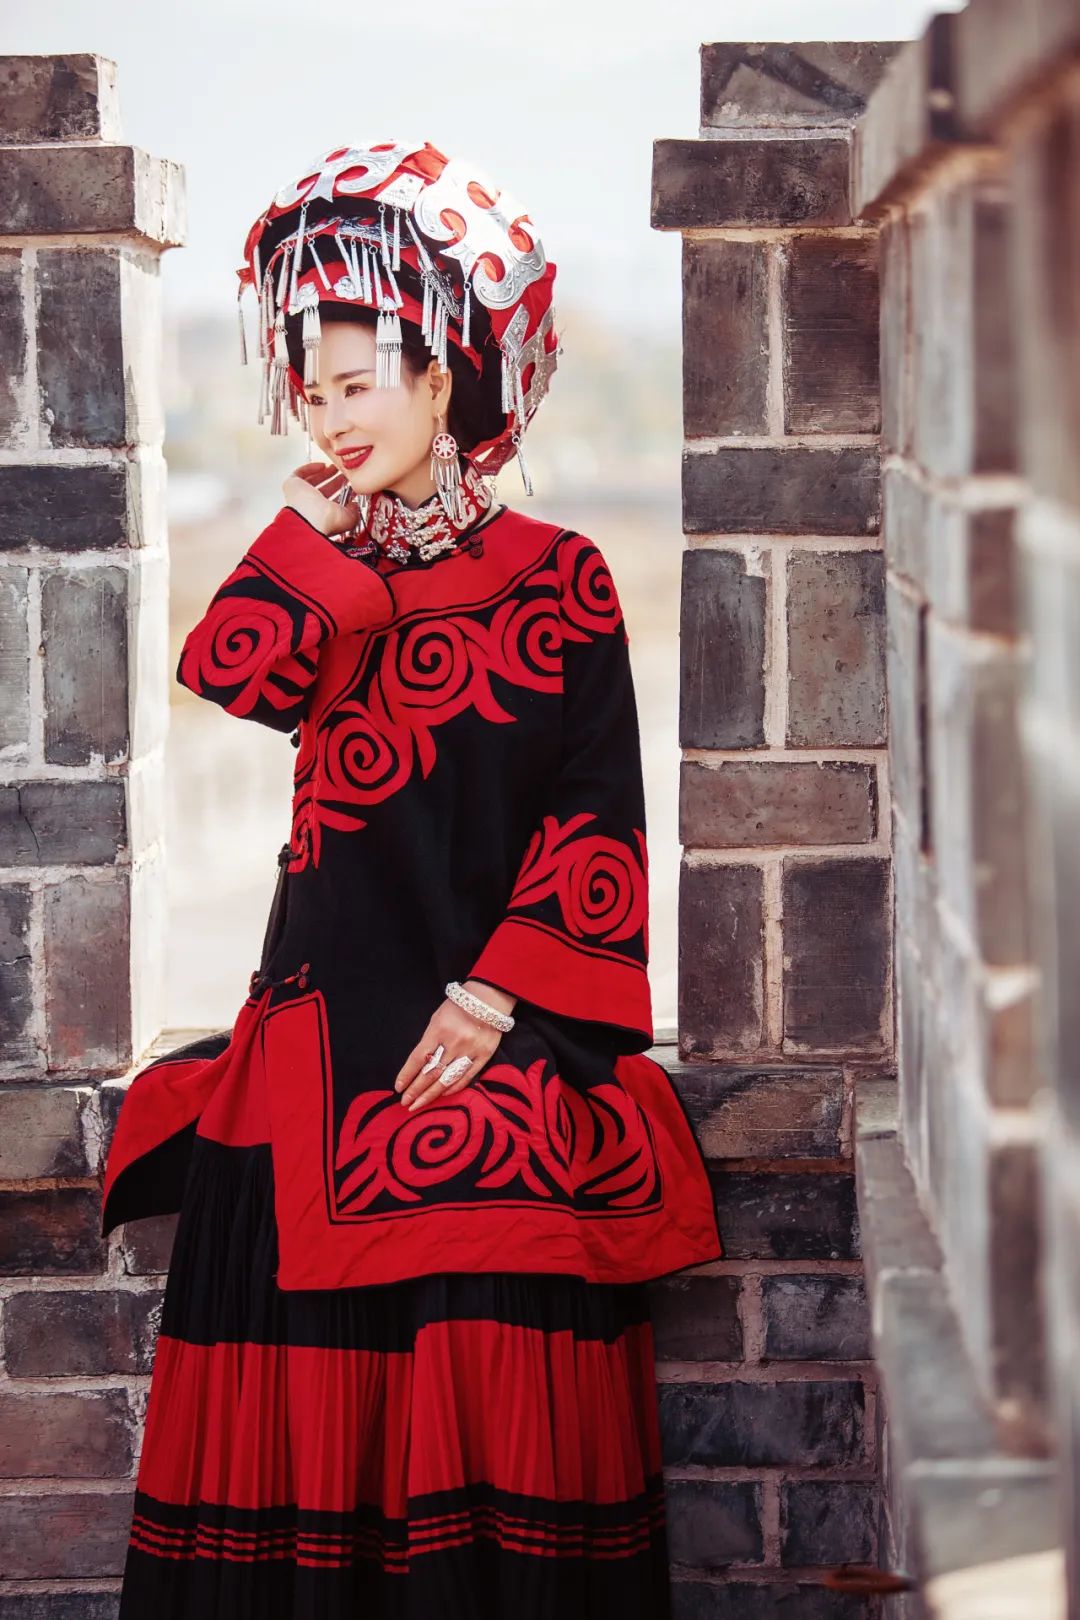 凉山非物质文化遗产的瑰宝 彝族服饰